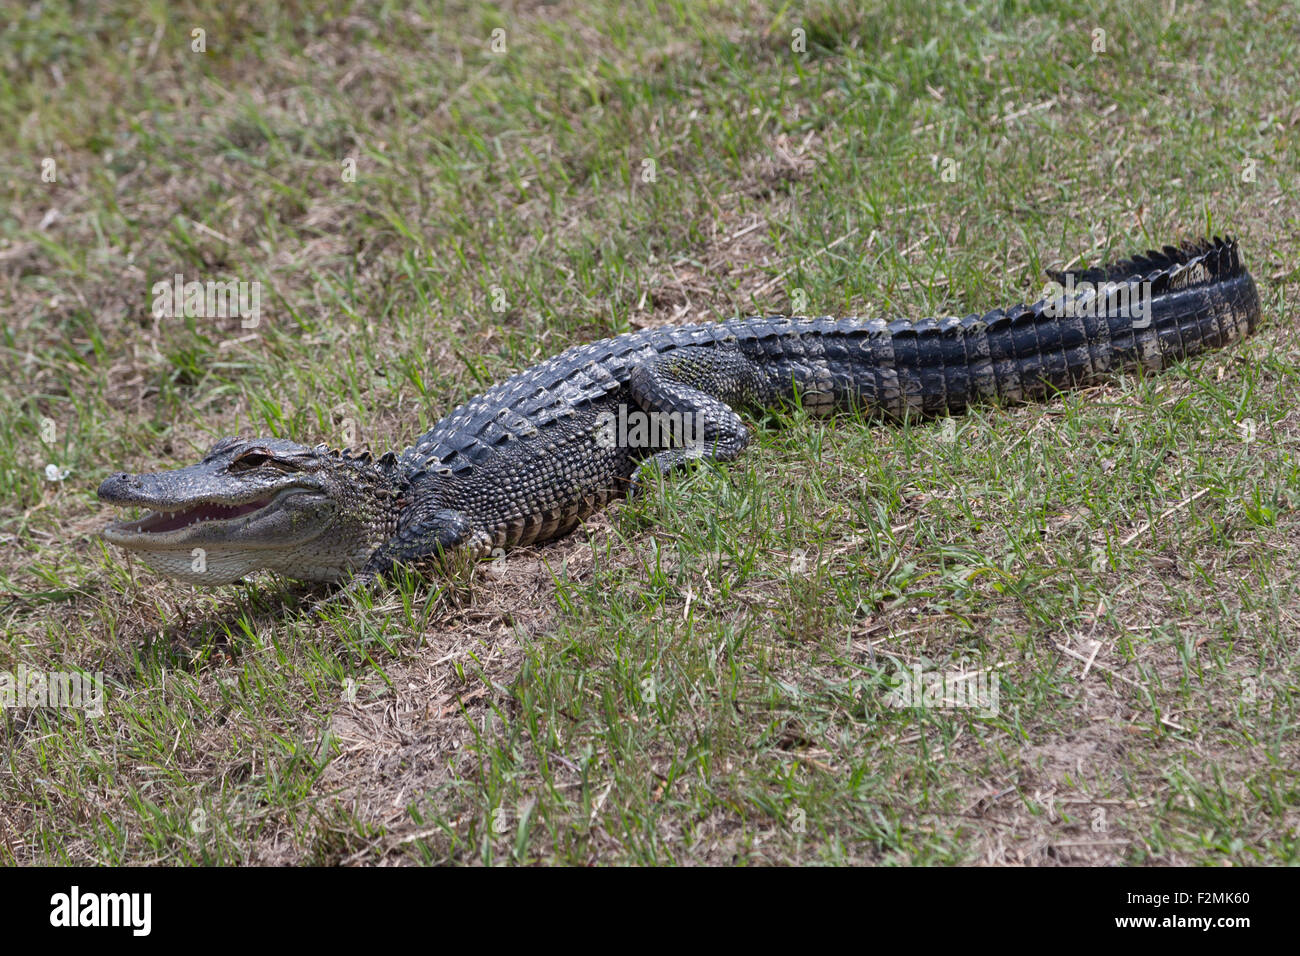 Ein Foto von einem amerikanischen Alligator in freier Wildbahn in der Nähe von Savannah in Georgia. Der Alligator ist selbst auf einige Rasen Sonnen. Stockfoto